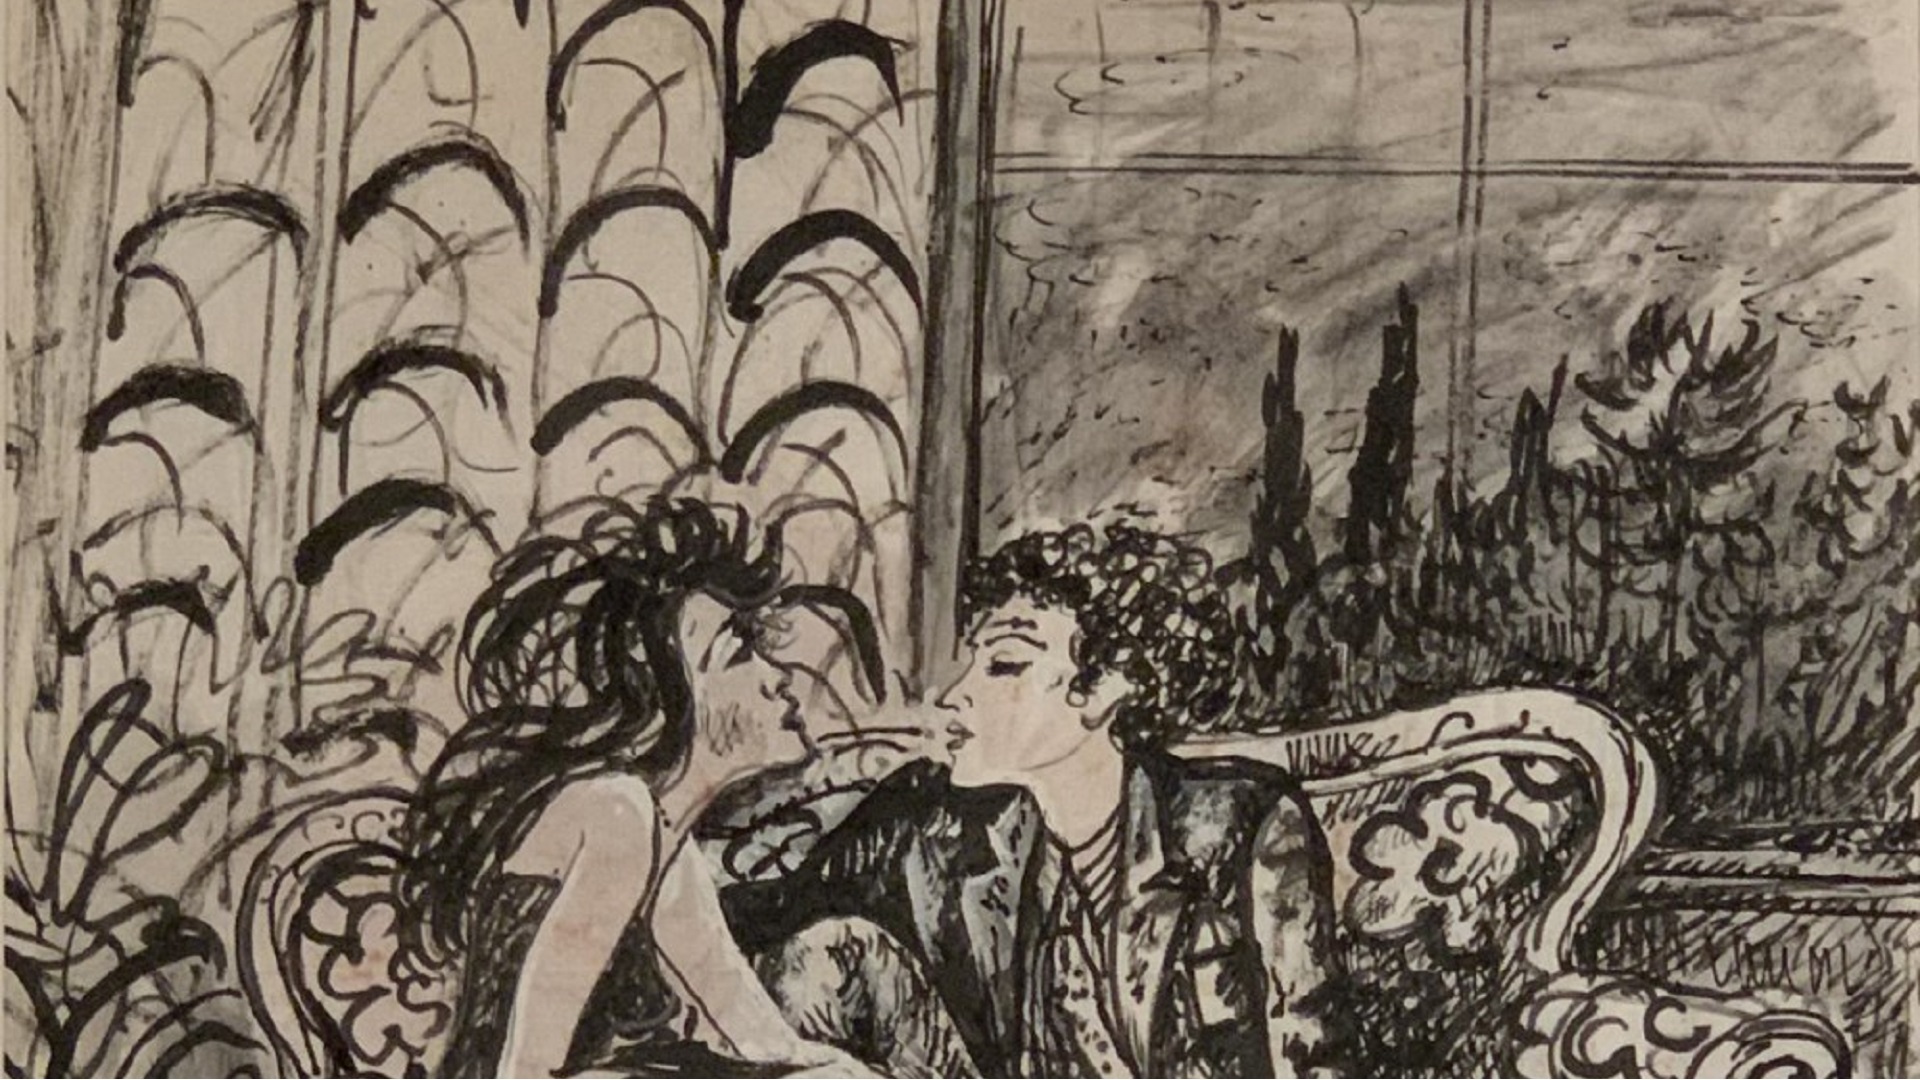 “Berni erótico”, una muestra con 12 dibujos pornográficos nunca antes exhibidos del gran pintor argentino